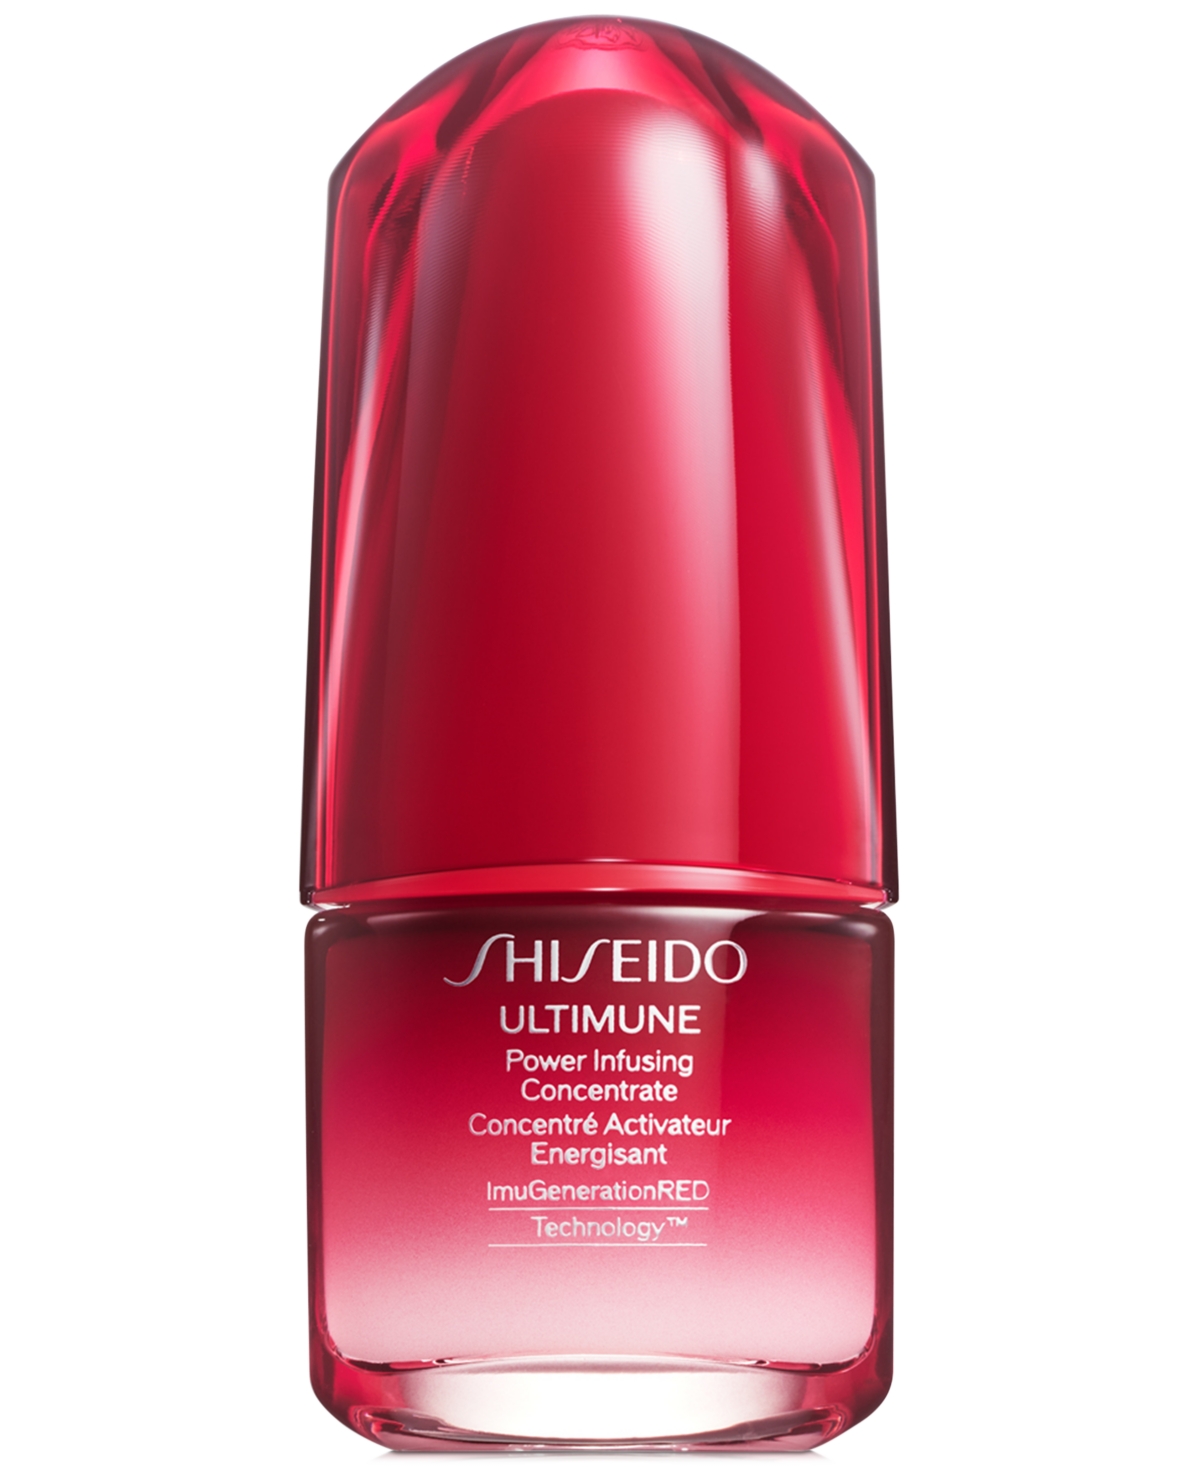 Shiseido концентрат. Shiseido Ultimune концентрат. Ultimate Power infusing Concentrate 3.0.